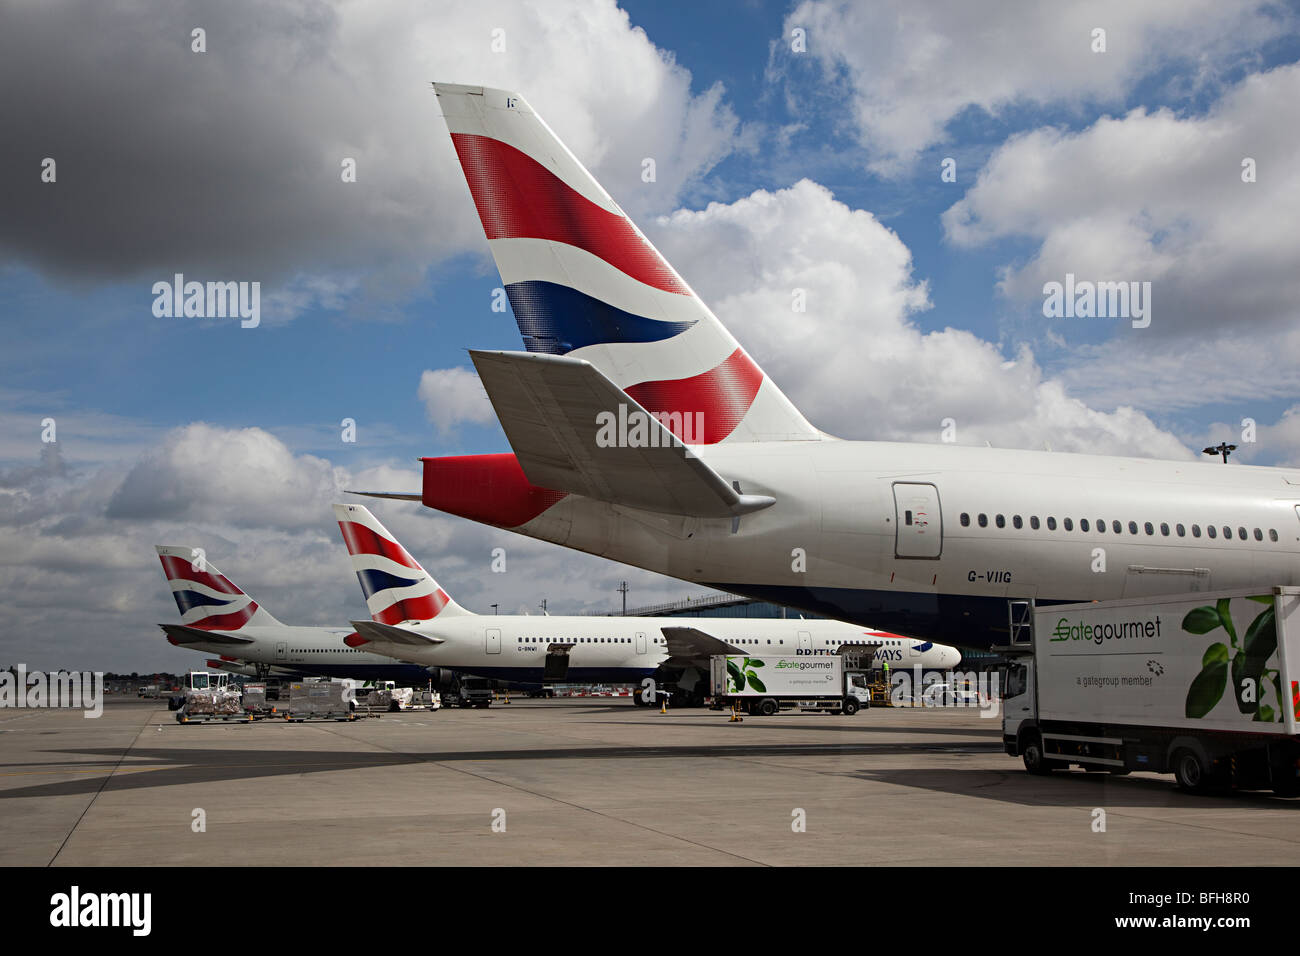 Code di British Airways aeromobile presso il terminale Heathrow aeroporto di Londra Inghilterra REGNO UNITO con Gate Gourmet autocarro frequentando Foto Stock